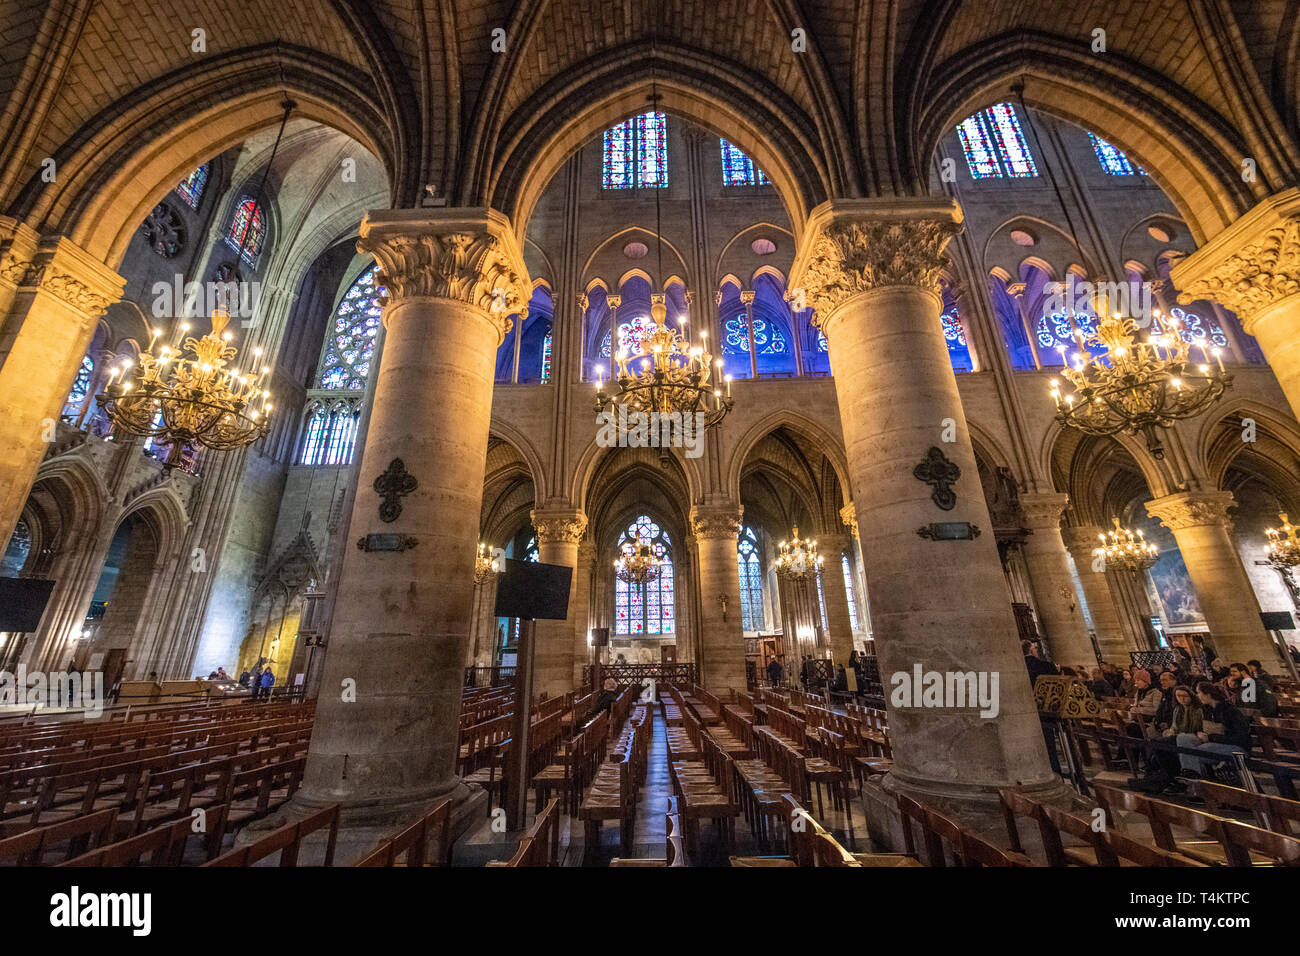 https://c8.alamy.com/compes/t4ktpc/interior-de-notre-dame-de-paris-catedral-gotica-medieval-en-paris-francia-pocas-semanas-antes-de-la-destruccion-por-el-fuego-t4ktpc.jpg